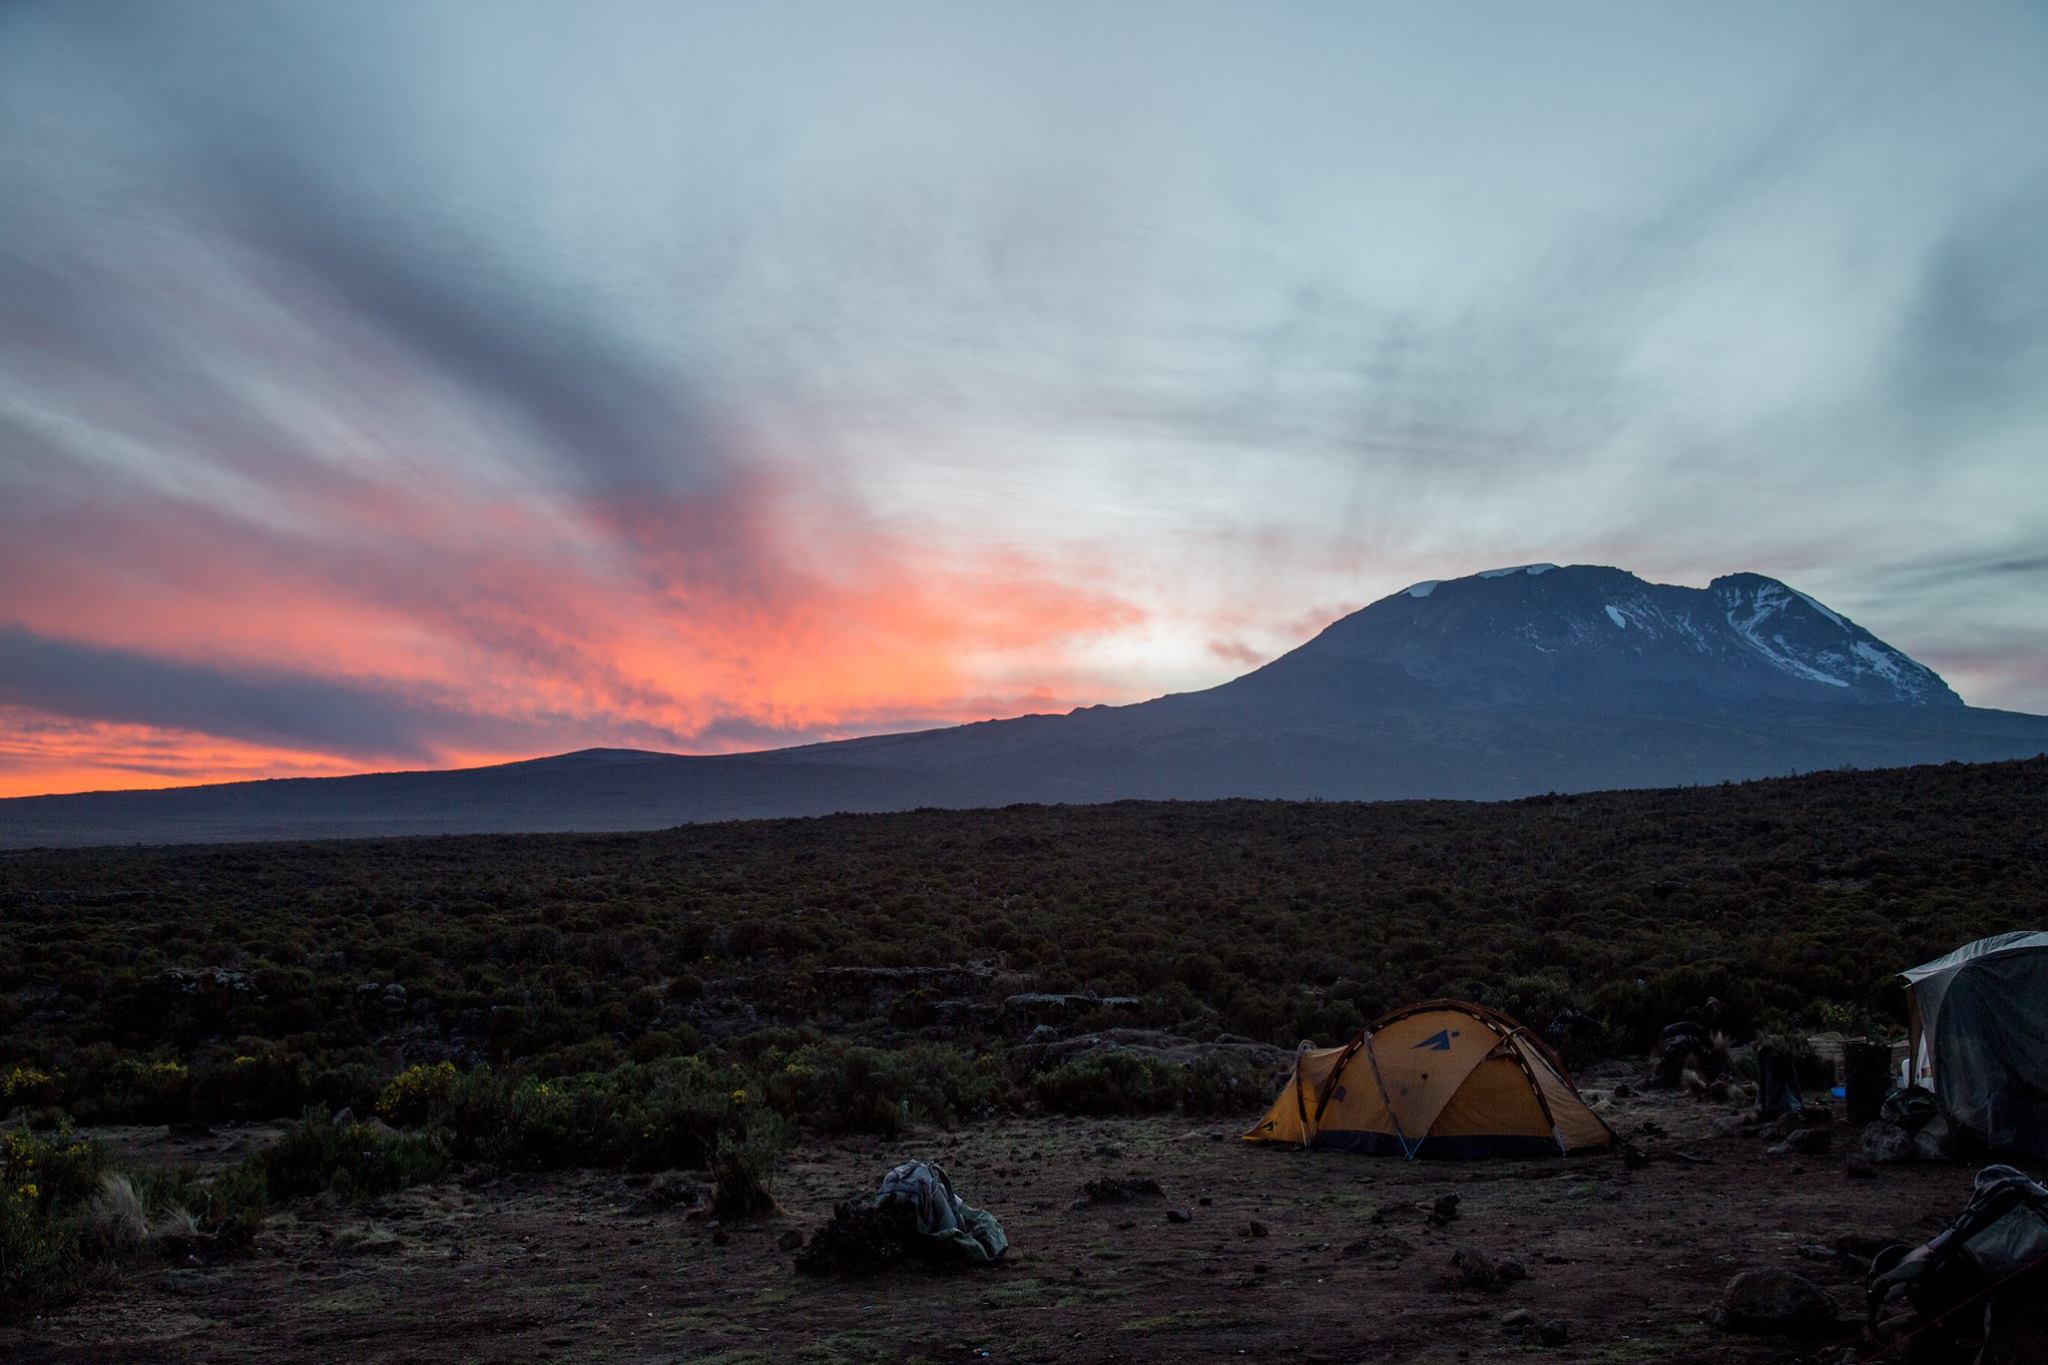 Why should I climb Kilimanjaro in May?